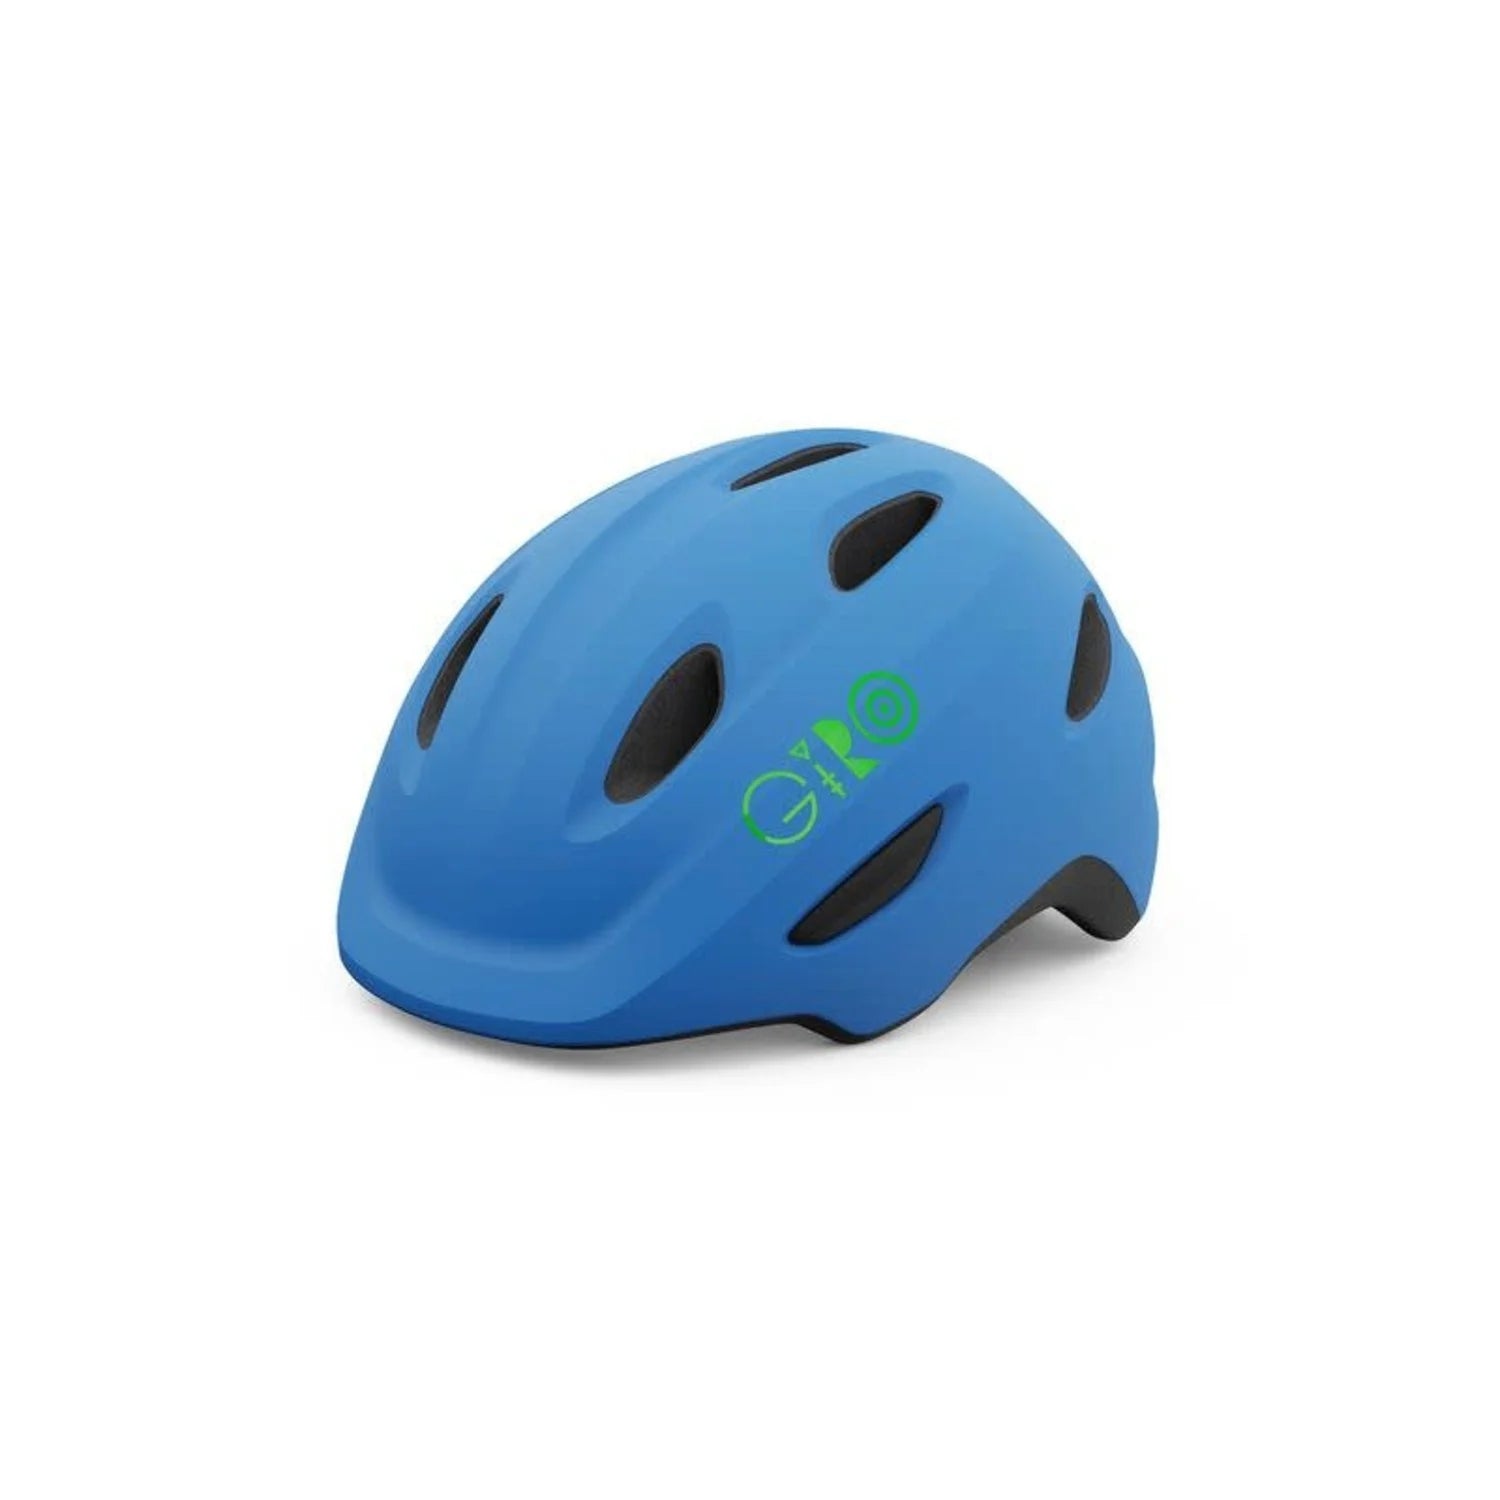 Giro - Casque Scamp Mips - Bleu / Vert lime - S - 210000008157